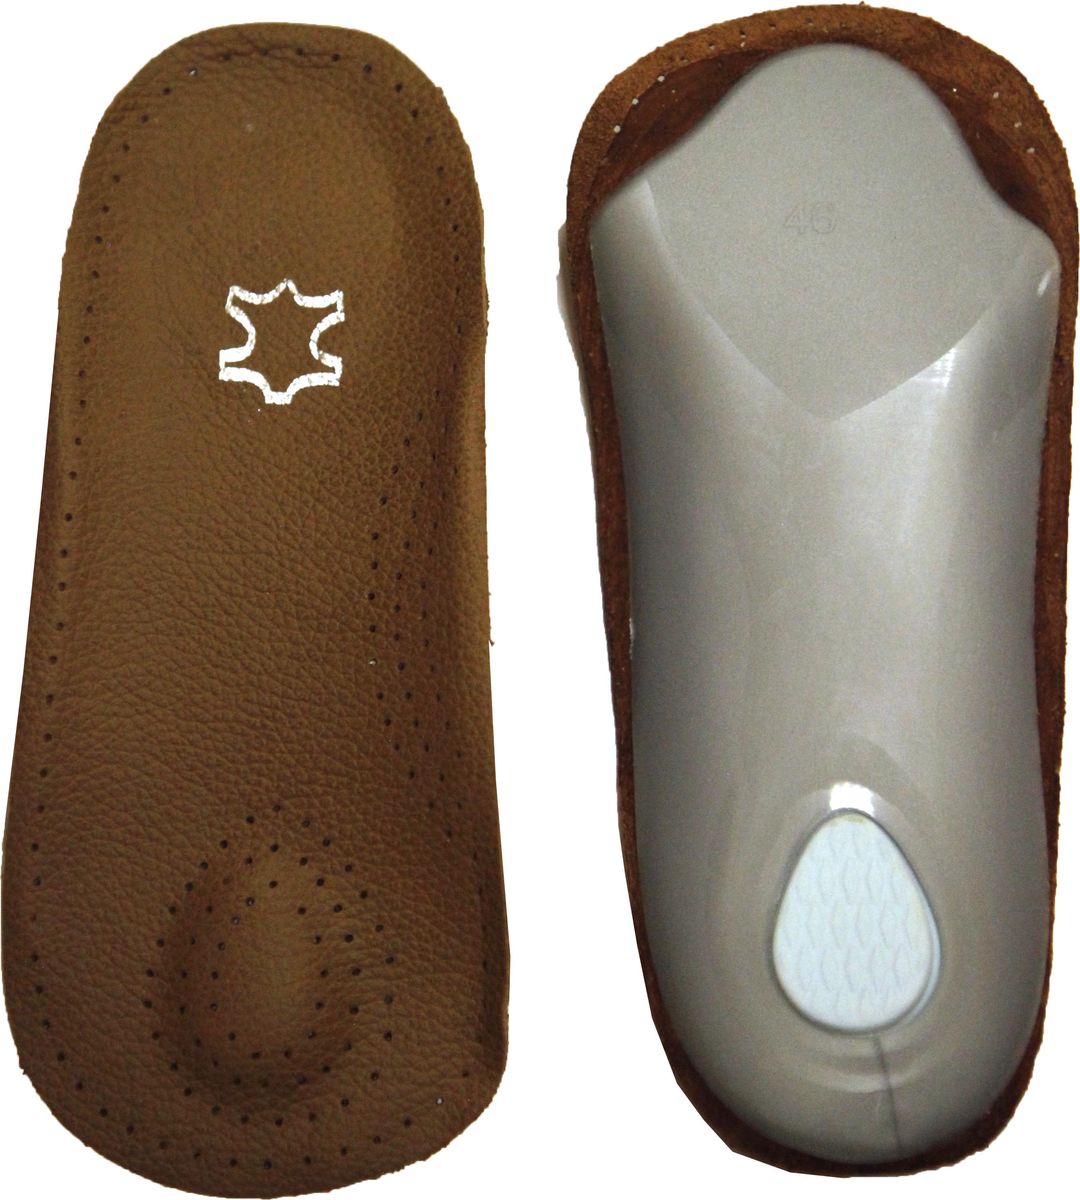 Полустельки для обуви Практика Здоровья, цвет: коричневый. ПСТК1. Размер 37/38